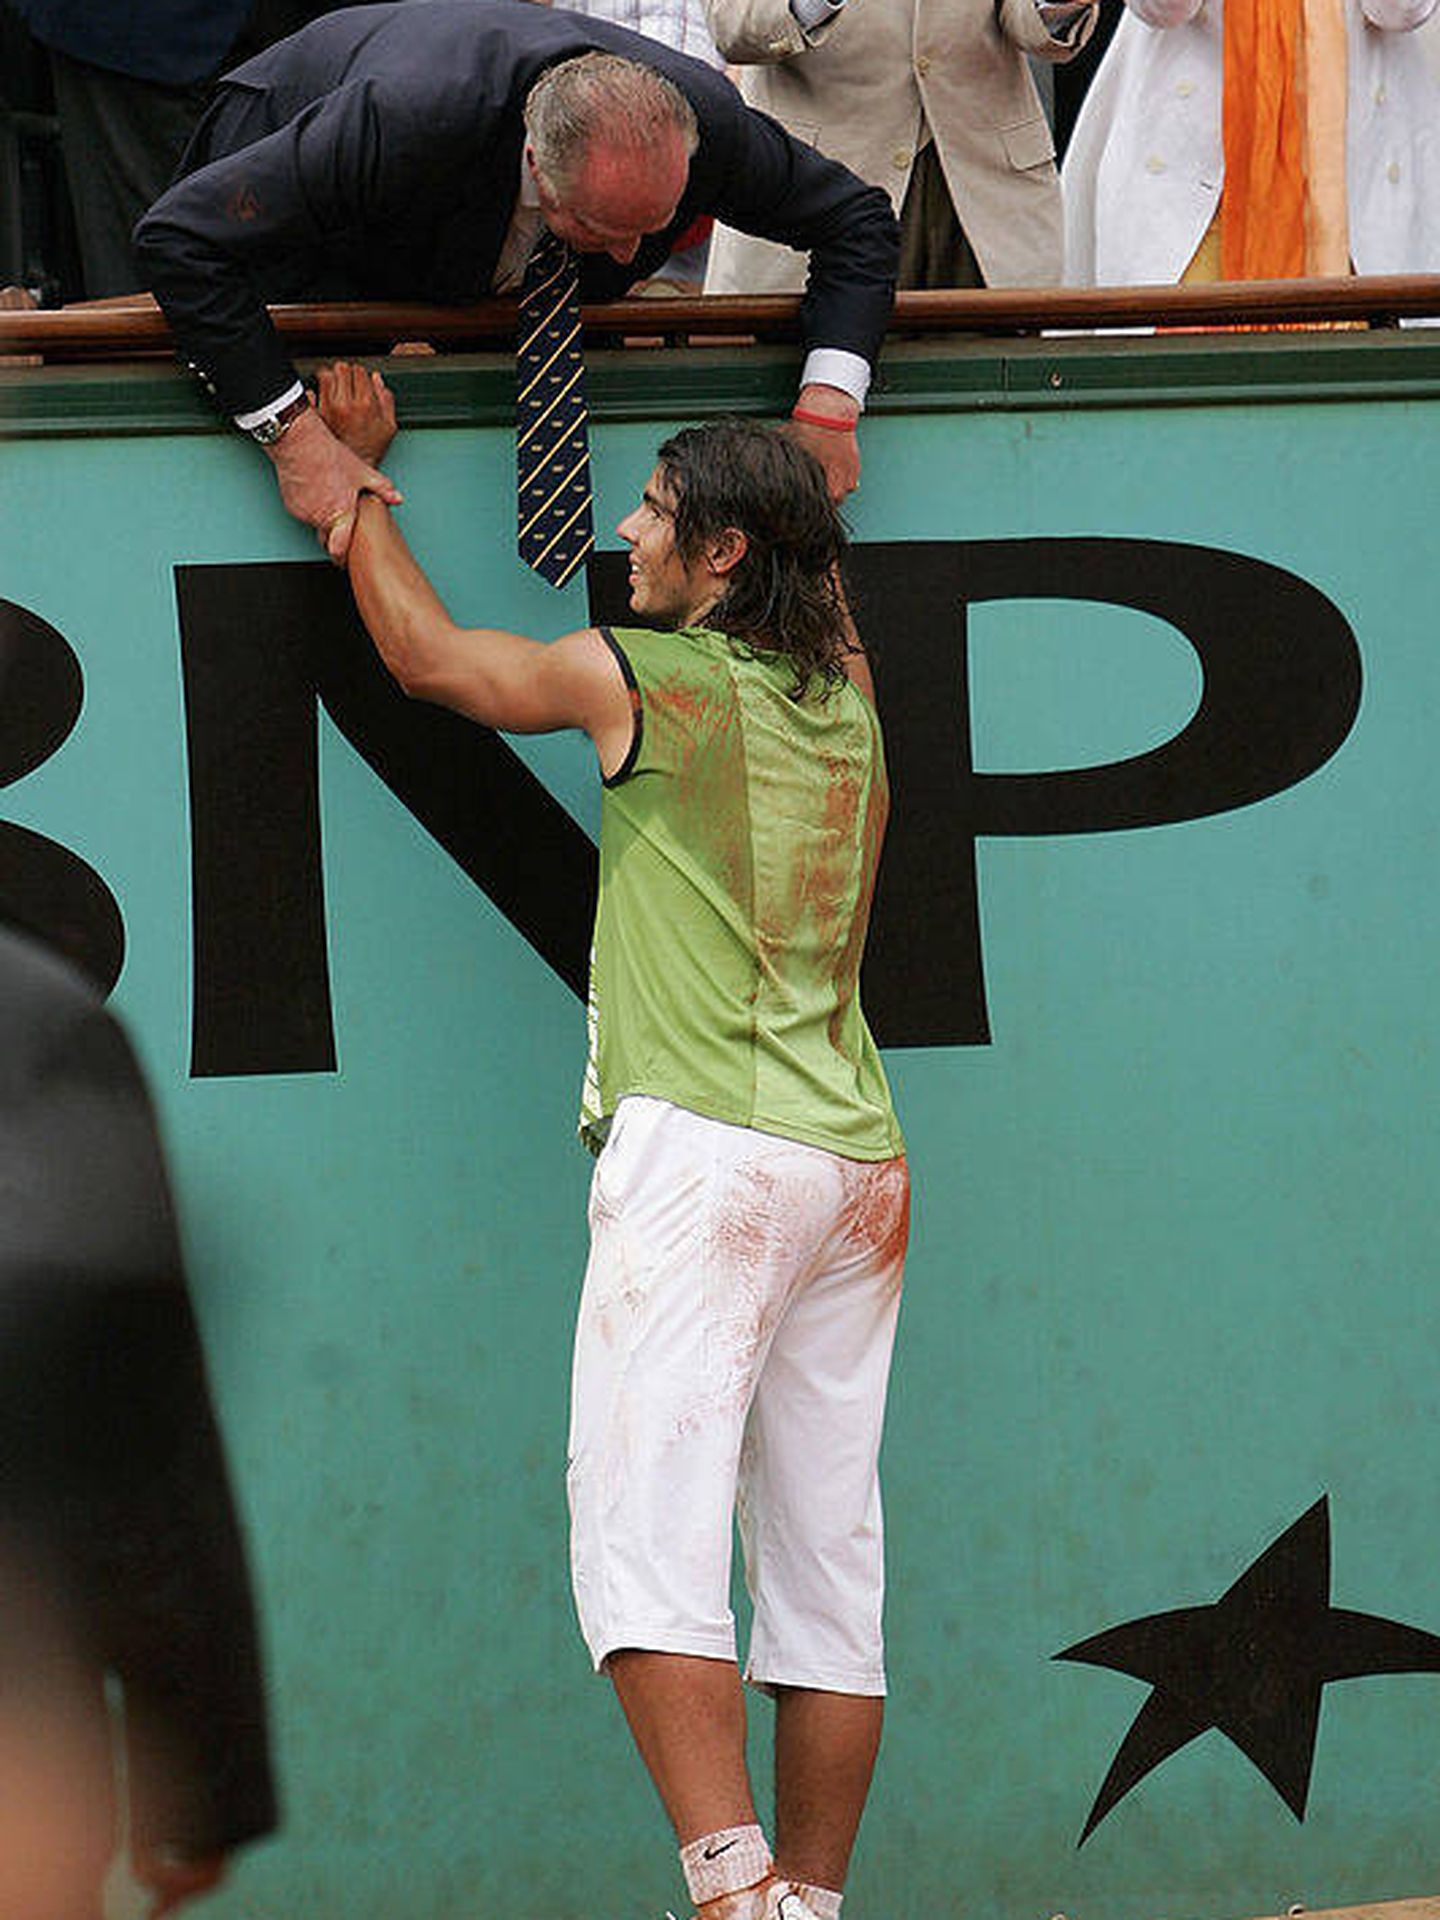 El rey Juan Carlos felicitando a Nadal tras ganar Roland Garros en 2005. (Getty)